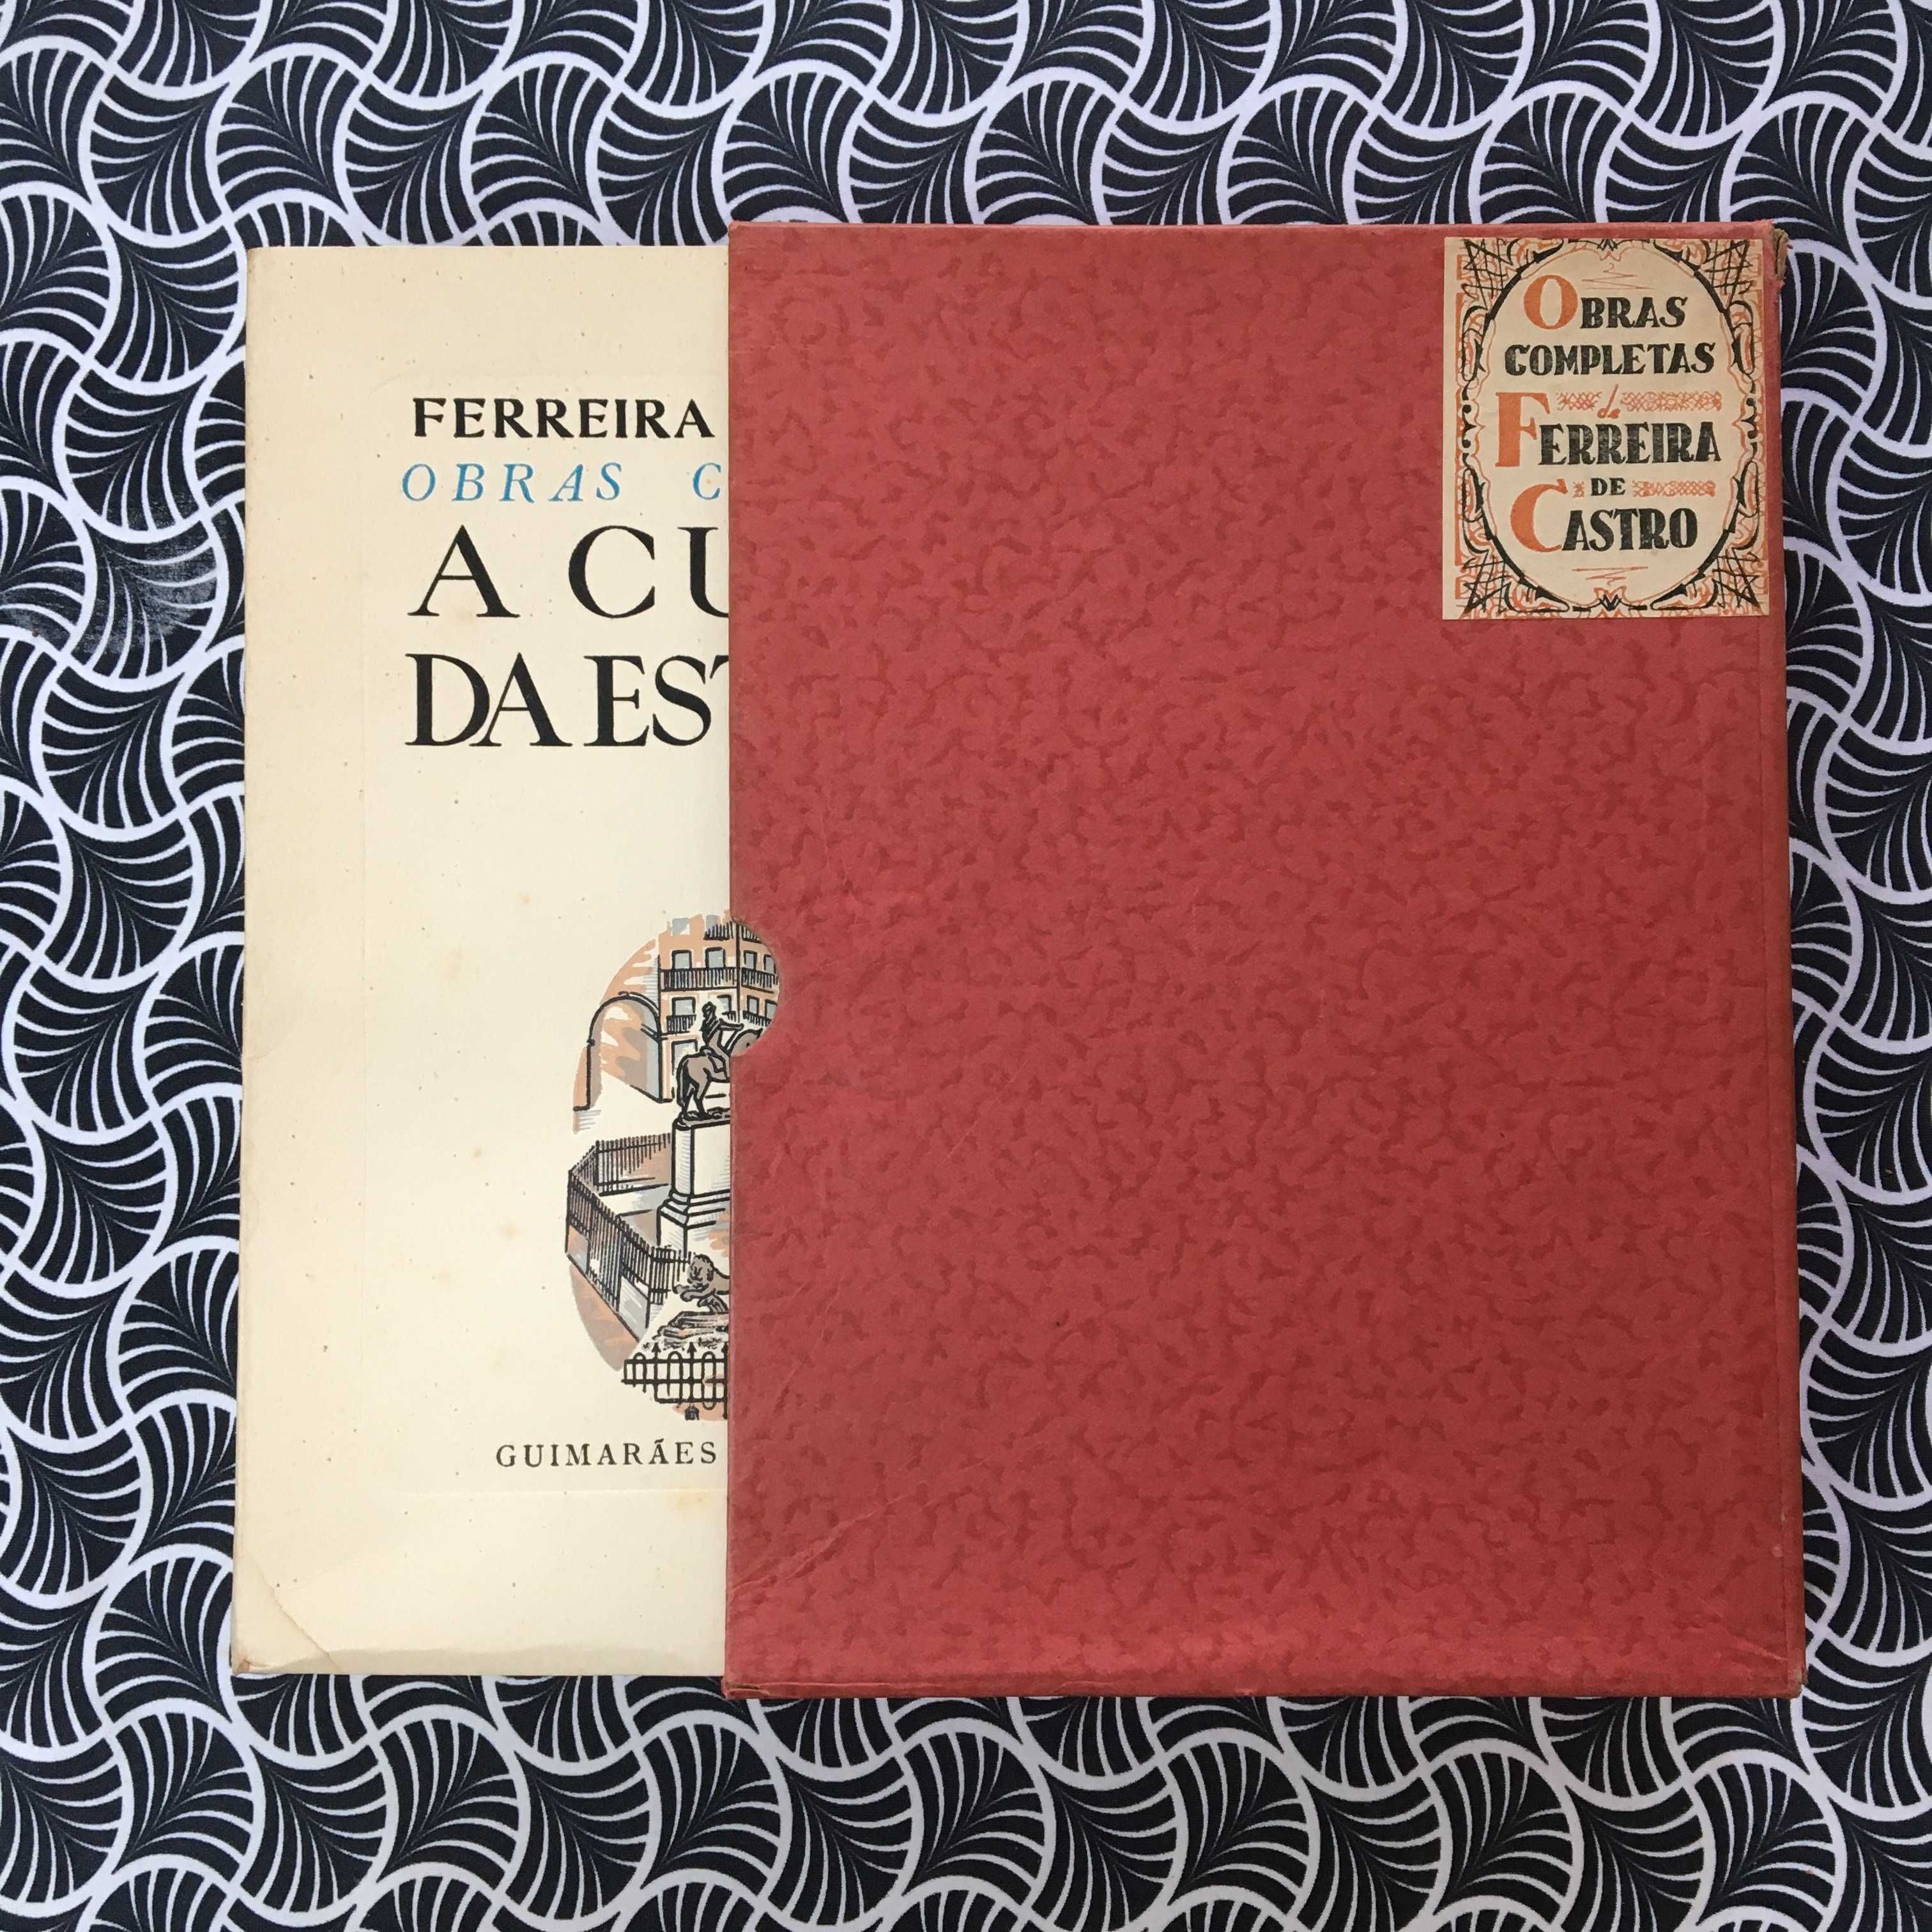 A Curva da Estrada (1ª ed.) - Ferreira de Castro